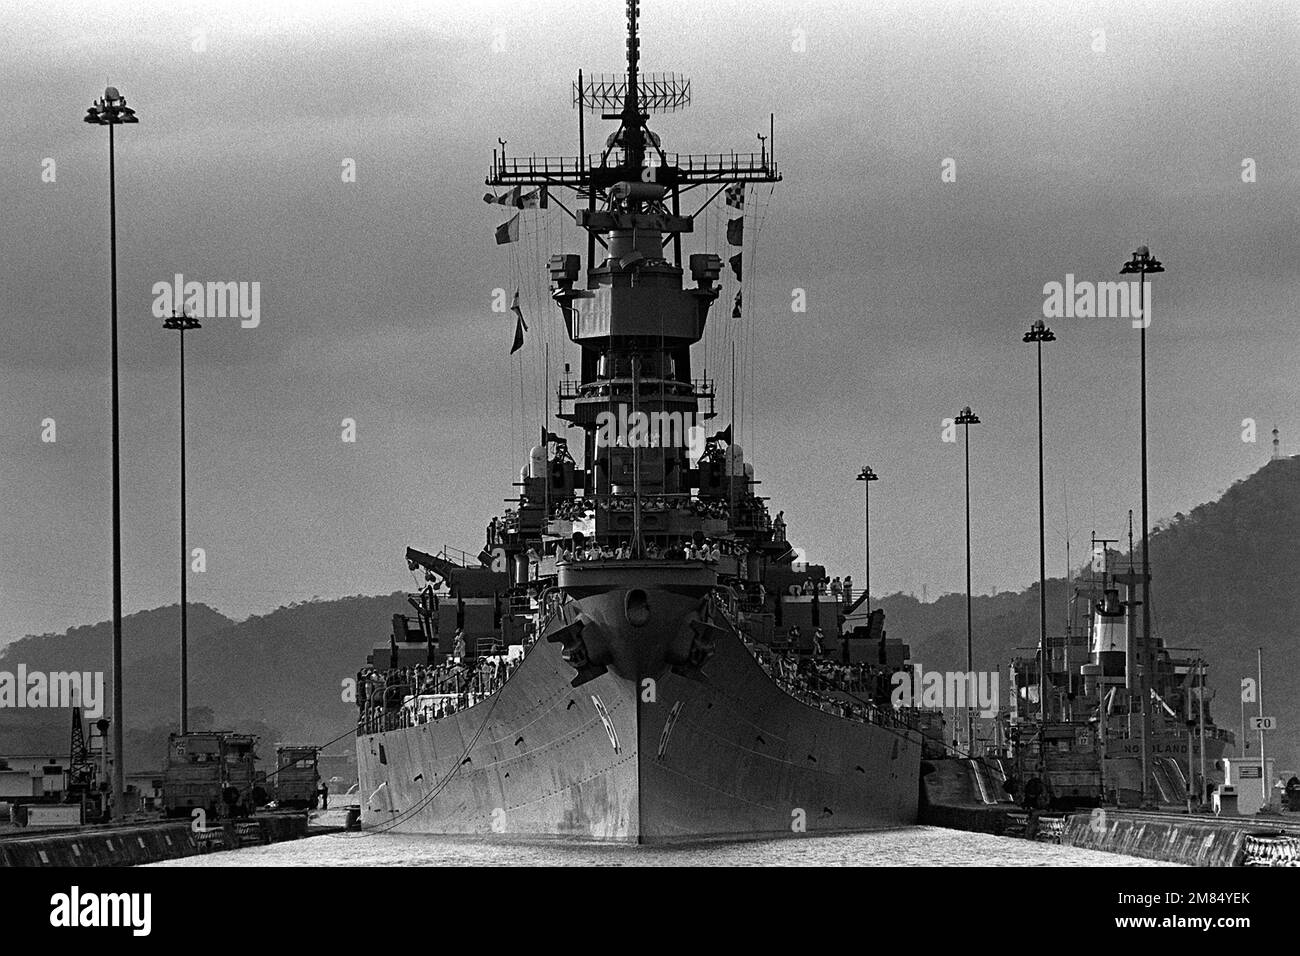 Ein Bugblick auf das Schlachtschiff USS IOWA (BB-61), das durch die Pedro Miguel Schleusen des Kanals führt. Die IOWA führt Präsenzoperationen durch, um das Interesse der USA an der Region zu wecken. Land: Panama (PAN) Stockfoto